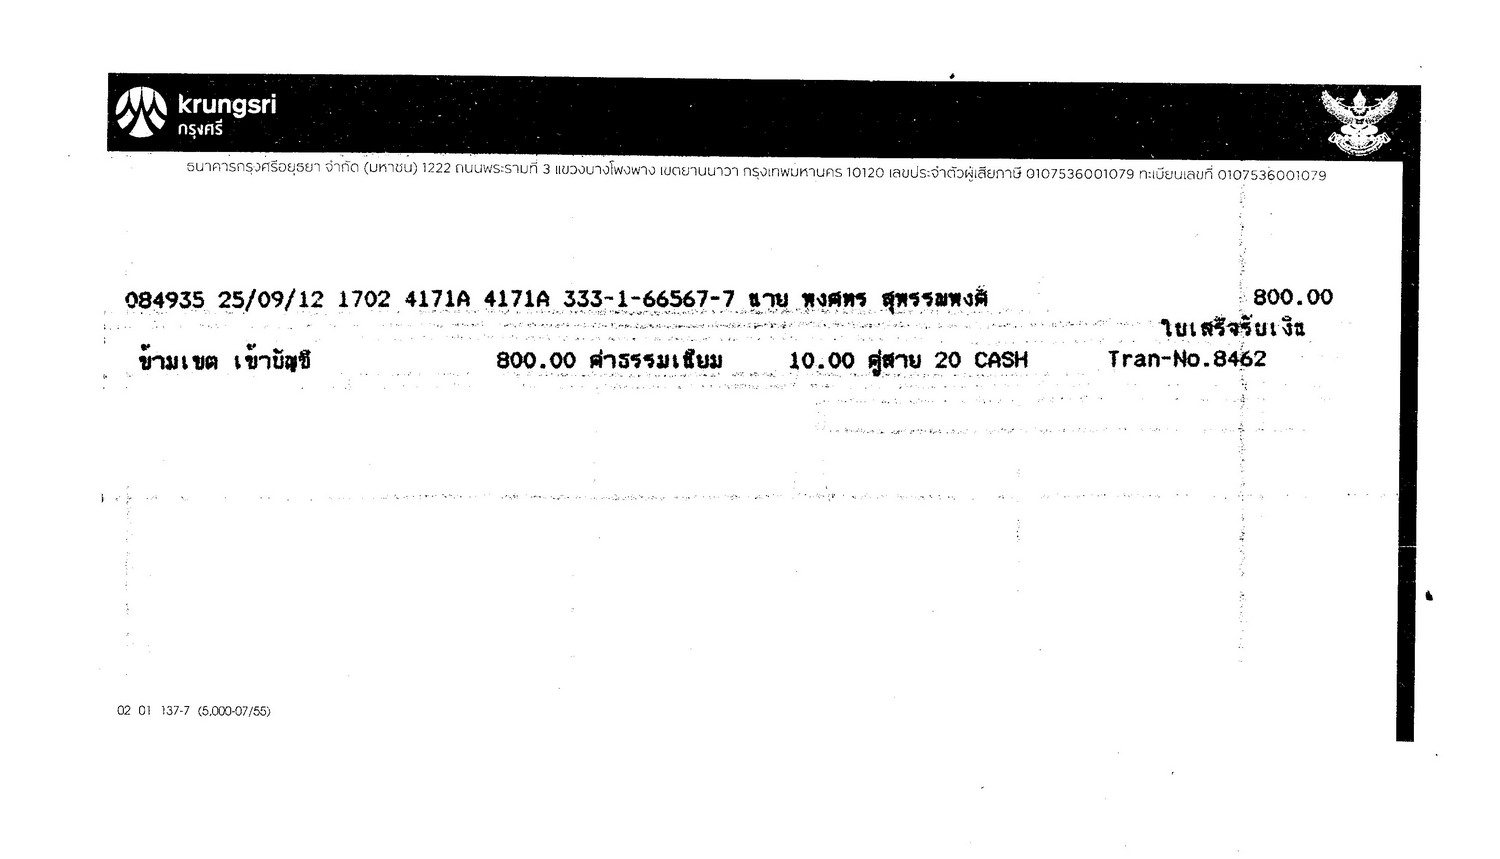 สมาชิก 1.  toa.1045 (auto2829)  			 2.  toa.1558 (kakino)   ได้โอนเงินค่าสติ๊กเกอร์มาให้เรียบร้อยแล้วนะครับพี่    ที่อยู่ส่งเอกสาร    :      นายนพดล    ใจเปี้ย    บริษัทนิ่มซี่เส็งลิสซิ่ง จำกัด  31  ม.1  ถนนไฮเวย์ลำปาง-งาว   ต.ชมพู   อ.เมือง  จ.ลำปาง  52100Tel..085-69503556

